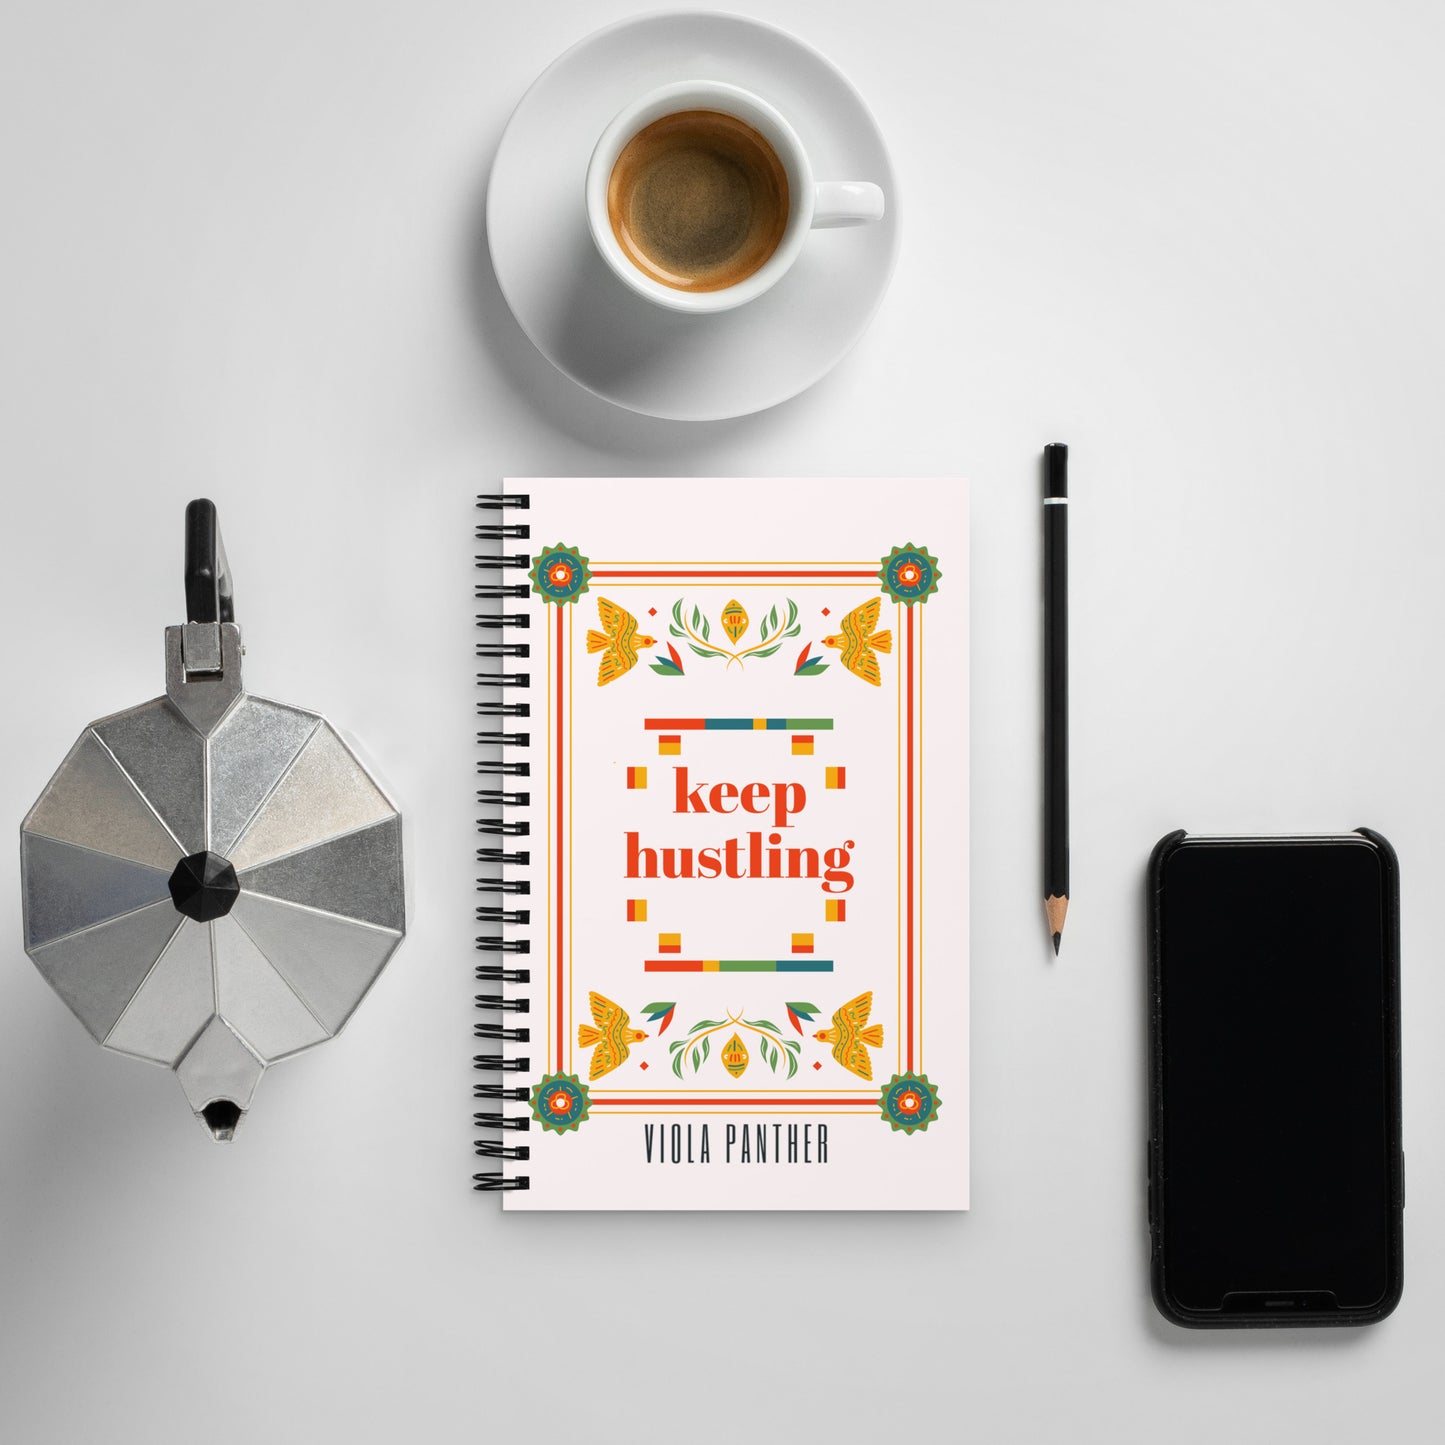 "Keep Hustling" | Spiral notebook